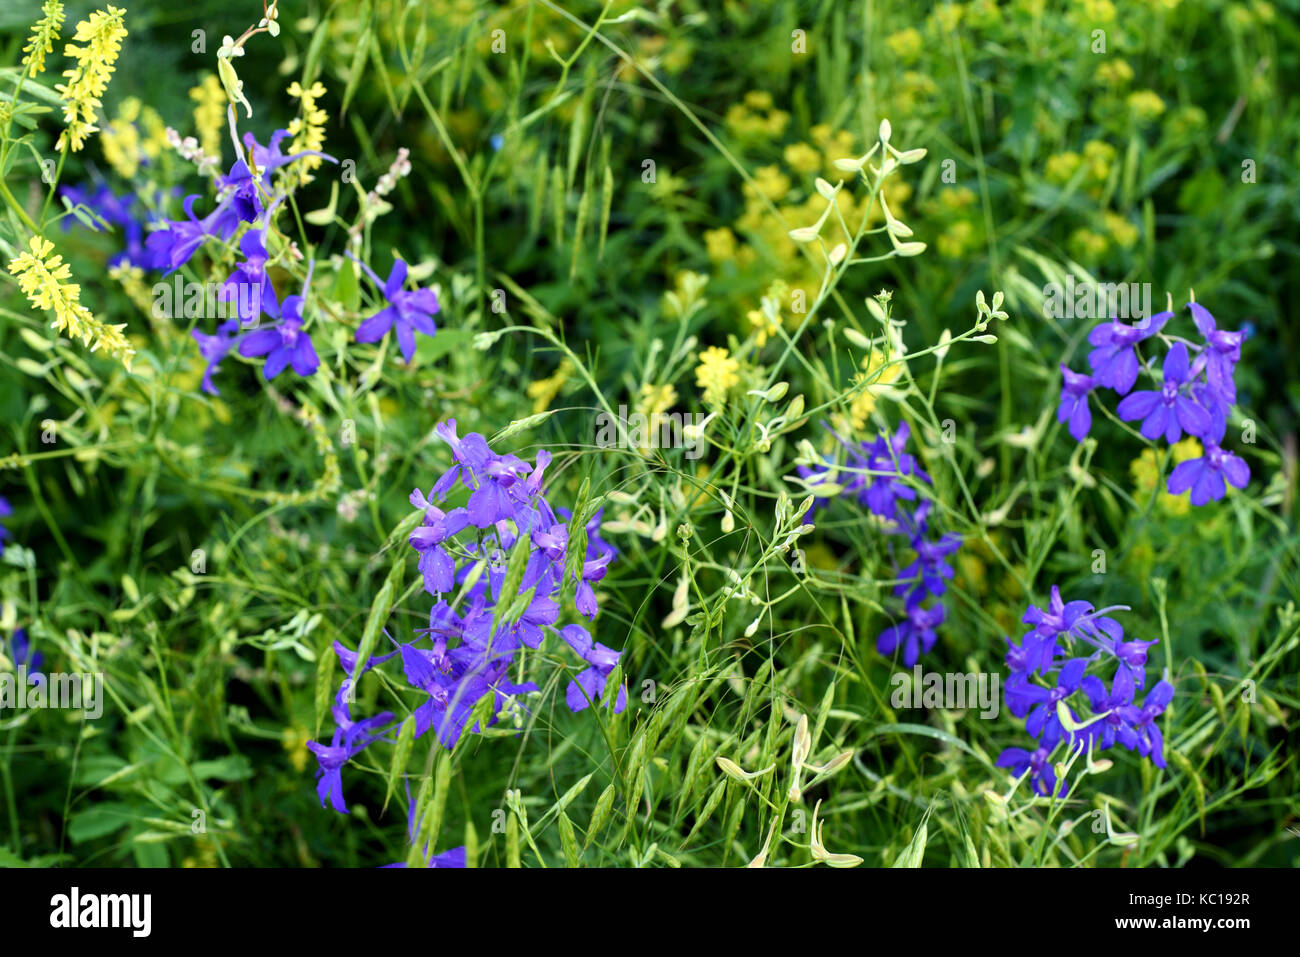 Blue larkspur flores silvestres que crecen en la naturaleza con vegetación verde y hojas Foto de stock